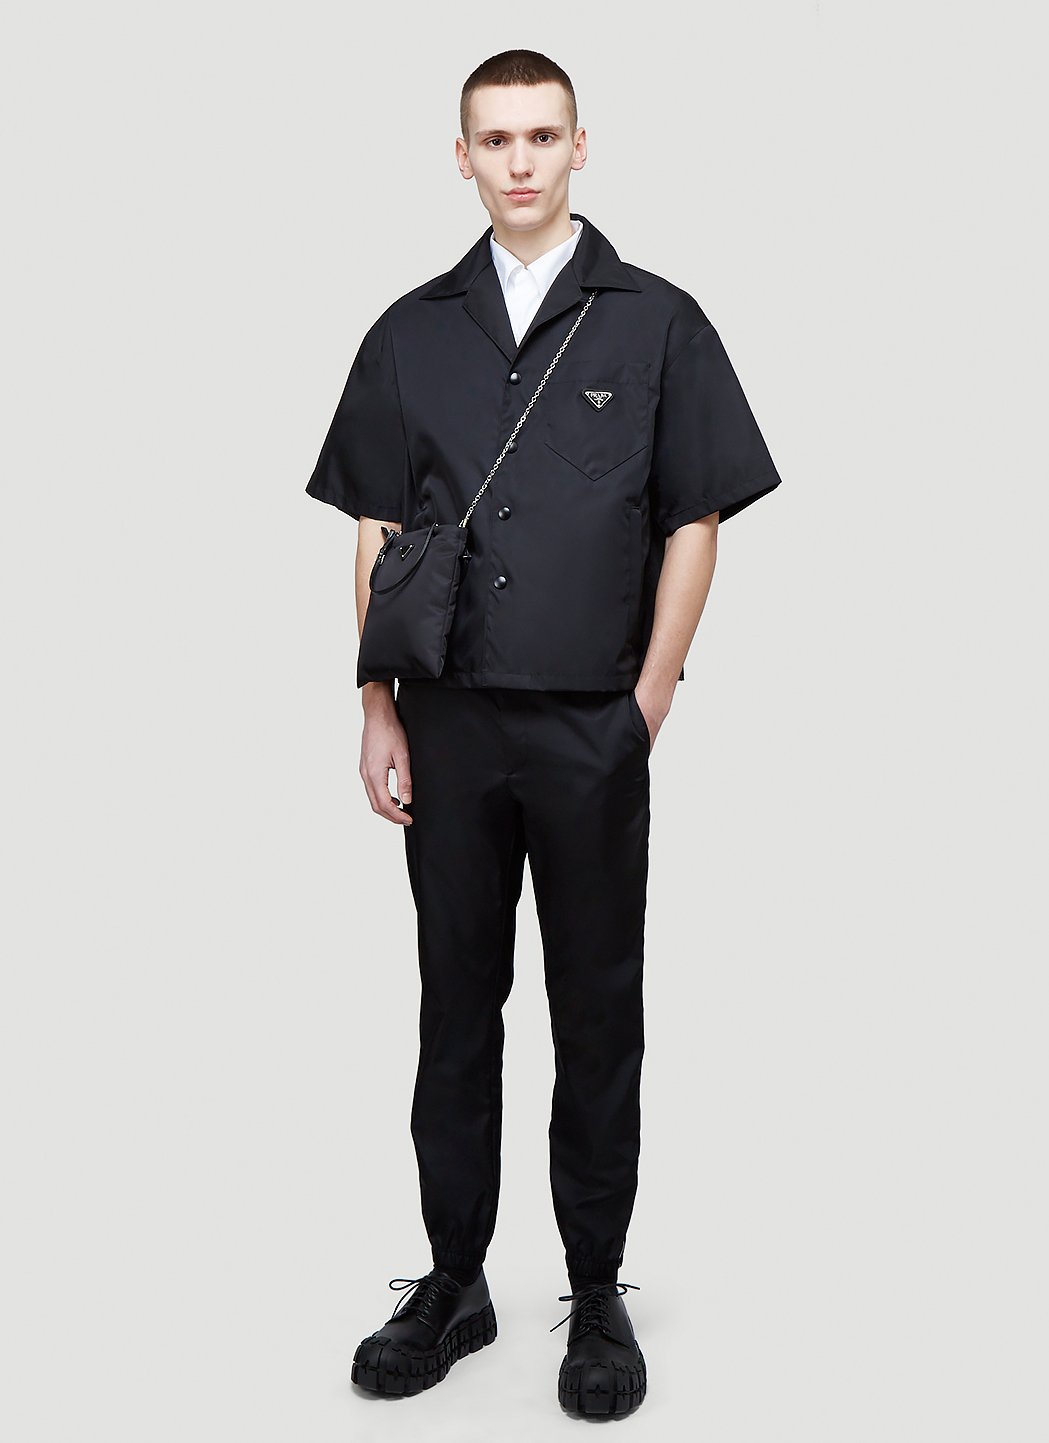 Prada Men's Re-Nylon Short Sleeved Shirt in Black | LN-CC